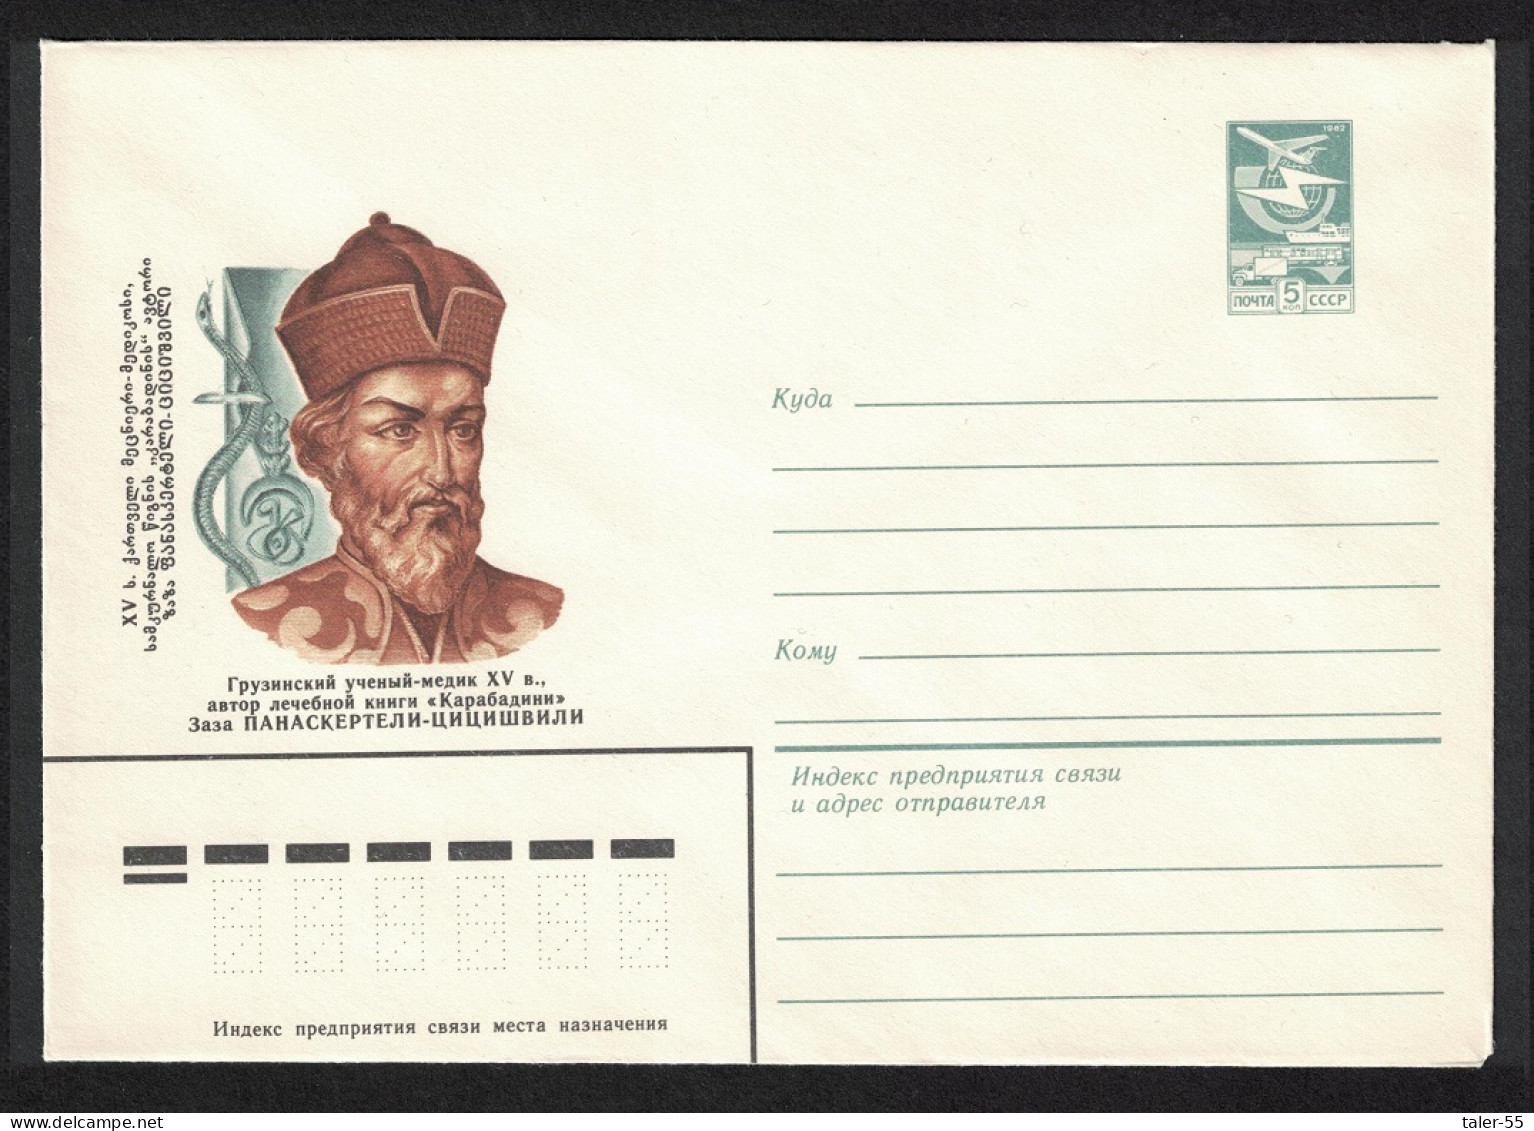 USSR Zaza Panaskerteli Great Georgian Healer Pre-paid Envelope 1980 - Usados